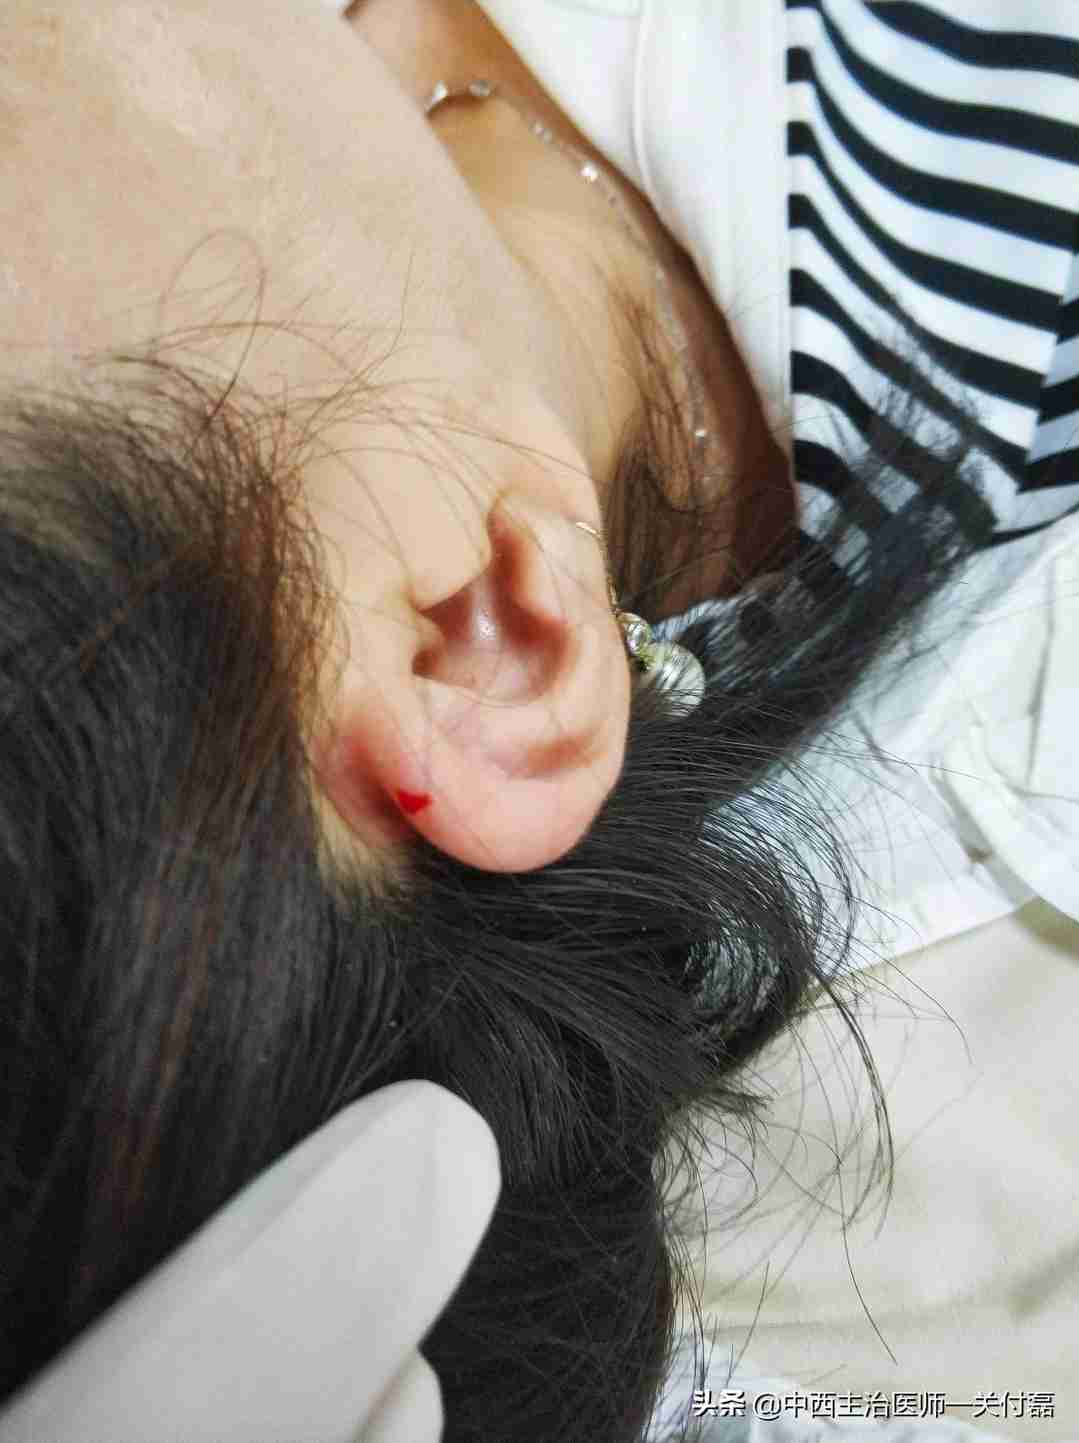 发烧、热毒、皮肤疮痒，中医有个简单有效的耳尖刺血疗法